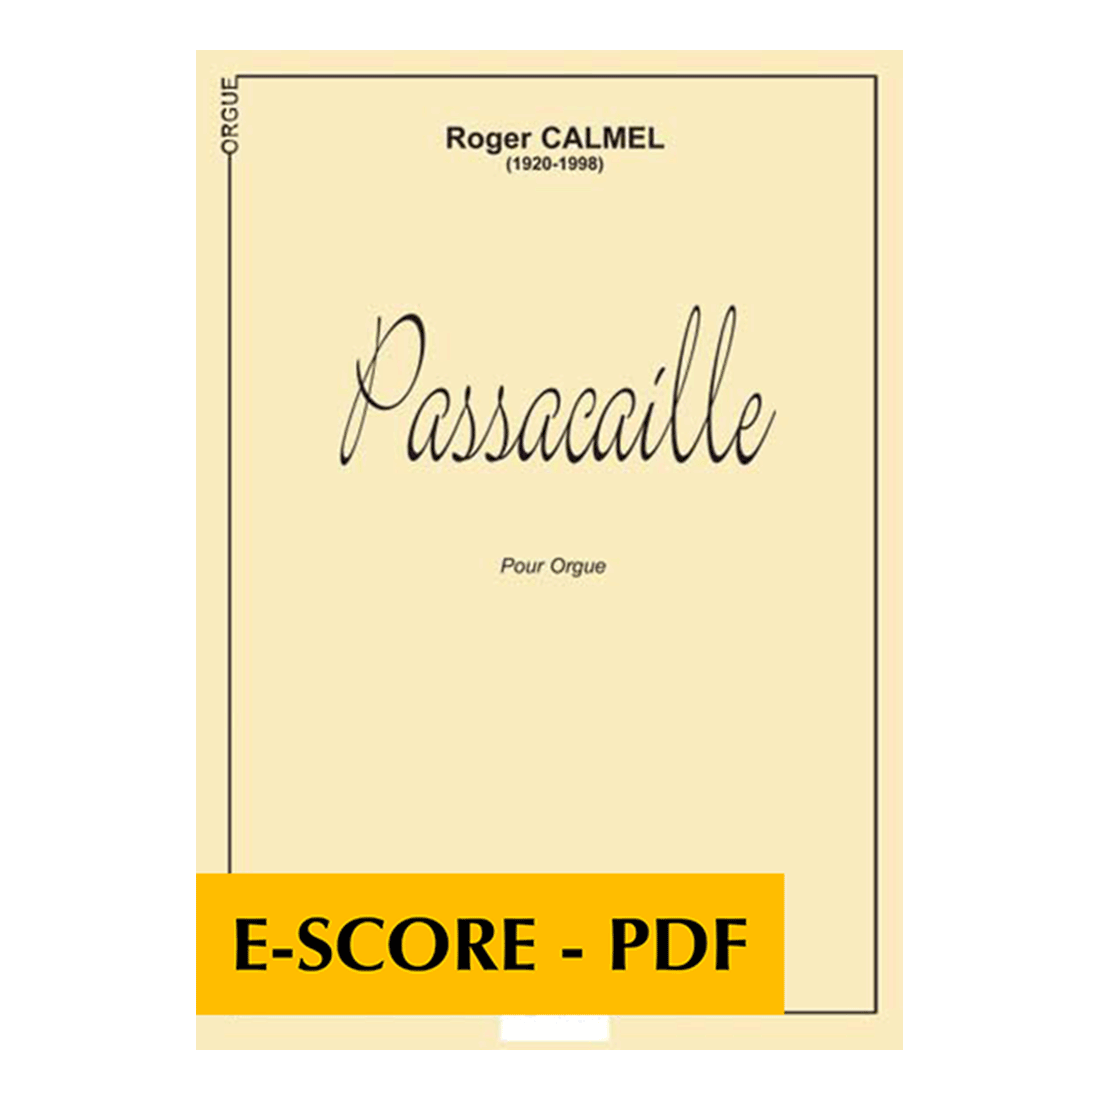 Passacaille pour orgue - E-score PDF